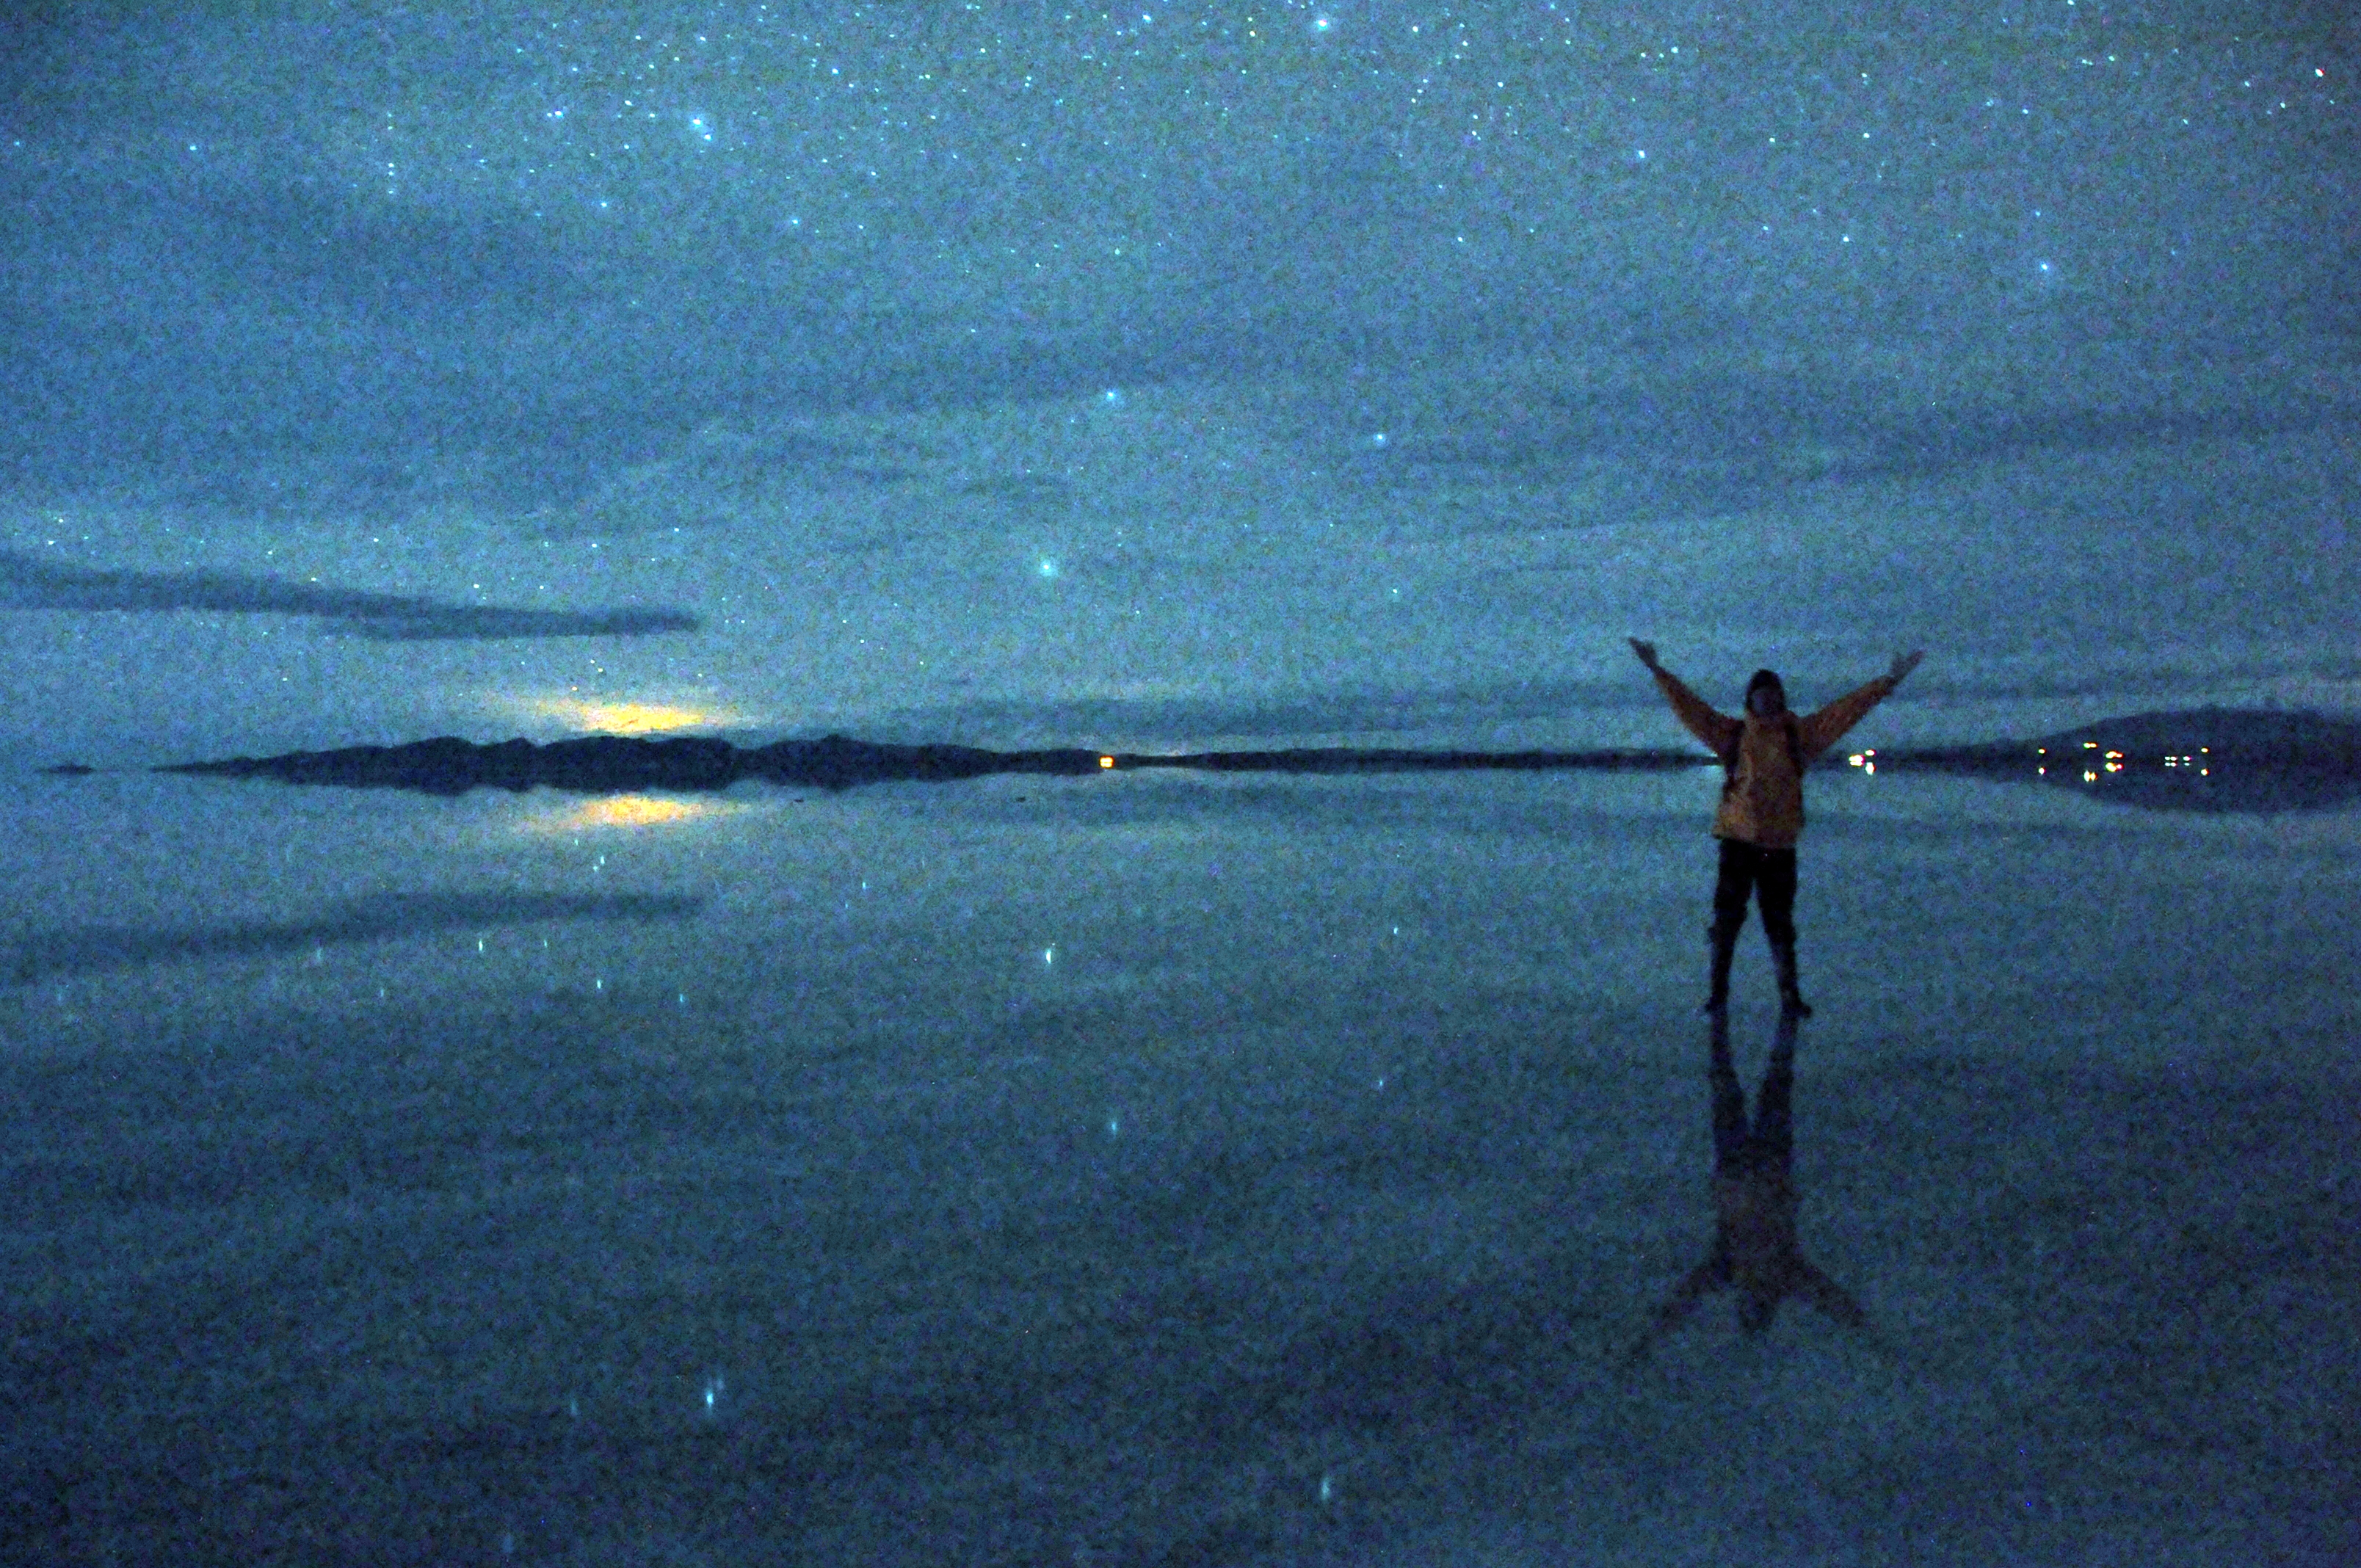 ウユニ塩湖の夜 宇宙 と呼ばれる9枚